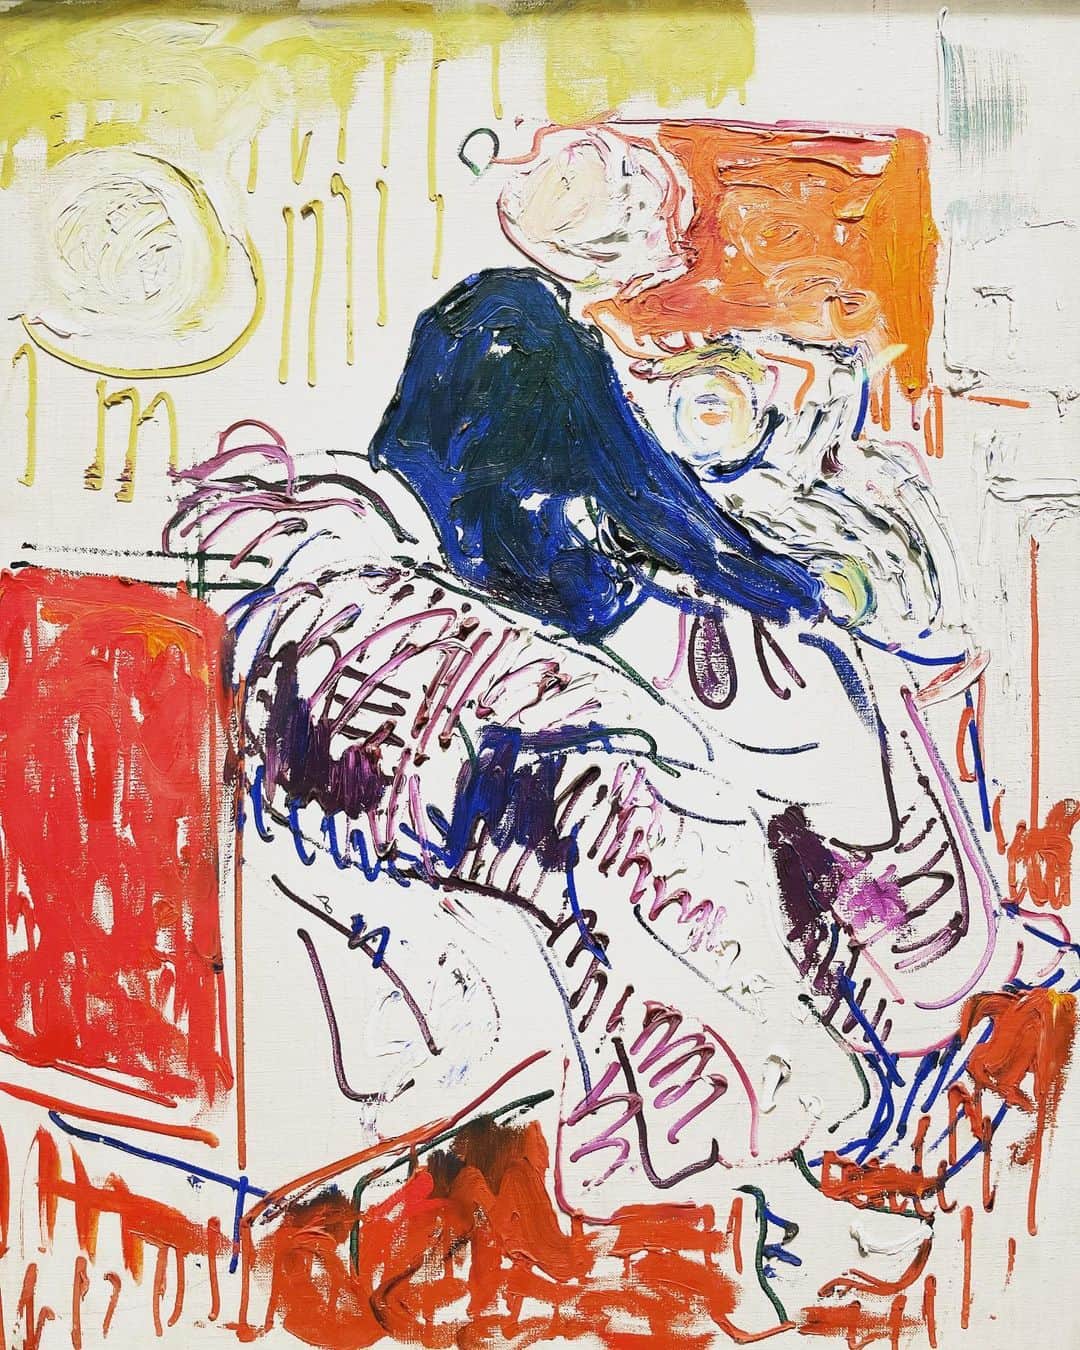 中谷美紀さんのインスタグラム写真 - (中谷美紀Instagram)「さて、こちらはどなたの作品でしょうか？  それぞれ筆致が異なるため、一目では判断し難いのですが、勘の鋭い方はお気づきかもしれませんね。 . . . . . . . . . . . これらはエドヴァルド・ムンクによる絵画と、よく知られた「叫び」をモチーフにアンディー・ウォーフォールが試みたシルクスクリーン版画です。  日本でも少し前にムンク展が開催され、「叫び」も初来日していたようですね。  現在ウィーンのアルベティーナ美術館にて開催されているムンク展はその名も «Edward Munch. In Dialog»と称して、ムンクの作品と、ムンクを敬愛しオマージュを捧げた幾人かのアーティストの作品が対話をするかのように同時に展示されています。  アンディー・ウォーフォール ゲオルグ・バセリッツ ジャスパー・ジョーンズ トレイシー・エミン マルレーネ・デュマス ミリアム・チャン ピーター・ドイグ  幼くして実母を亡くした上に、病弱な身体を持って生まれ、通学することが叶わずに学童期を自宅で過ごしたムンクは、叔母によって絵画の才能を見出され、描く機会を与えられたそうです。  しかし、母に続いて姉との死別という彼にとって忘れ難き喪失の体験に加えて、自国ノルウェーの画壇で酷評さはれたり、痴情のもつれによる銃の暴発事件で中指の一部を失ったり、スペイン風邪を患って瀕死の状態となった上、二度の大戦を体験し、ナチスには退廃芸術の烙印を押され、アルコール依存症と精神疾患に苛まれて苦渋の人生を過ごしました。  ヒ素を主成分としていた緑を多用するムンクの作品には、病的な人間関係や圧倒的な孤独、疎外感、喪失感、絶望、憂鬱、嫉妬、哀しみ、恐れ、痛みなどが顕著に表れており、決して心地よいものとは言えないため、残酷なニュースが間断なく舞い込んで来る今この時期に鑑賞に出かけることは、とても勇気のいることでした。  その一方で、演じるという行為を生業にする以上は、他者の心に潜むあらゆる感情をあまねく観察し、人様の喜びも痛みも、自らの愉悦も苦悩も等しく貪りながら表現するより他に手立てはないのです。  ムンクの書き残した言葉を編纂し、原田マハさんが翻訳なさった「愛のぬけがら」によると、ムンクは以下のように述べています。  「私は、心をむきだしにしなくてもいいようなアートを信じない。文学でも、音楽でも同じだが、あらゆるアートは、心血を注いで創造されるべきだ。アートとは、心の血のことだ」  アーティストが流す心の血液であり、情熱や悦びの発露による果実でもあるアートを、役柄を演じるための拠り所とすることも多く、この度も次に控える作品に向けて資源を掘り起こすべく、徒歩圏内の美術館を訪れたのでした。  ムンクが意外にも現代アートのような抽象表現を試みていたことは新たな発見で、1枚目の作品などは、ノルウェイの国立美術館で隅に追いやられ、仕舞い込まれていたものだそうです。  「私のアートは告白だ。アートを通して世界との関係をはっきりさせたいのだ。言ってみれば、自己中心主義だ。 しかし同時に、私のアートは、誰かが真理を追求するとき、白黒はっきりさせる力になれるんじゃないか」  エゴの強すぎるアートに触れるとどっと疲れるのですが、少なくとも画家自身がエゴを自覚していることに安堵感を覚えましたし、望んだように人を愛し、愛されることができず、人生が耐え難きものであったはずのムンクが、自死を踏みとどまることができた理由もそこにあるのではないかと、推察する次第であります。  ムンク自身の作品もさることながら、彼の魂に共鳴するアーティストたちによる現在の世相の写し鏡のような作品に完全にノックアウトされ、午後から寝込んでしまったほどです。  毒をもって毒を制するような荒療治に耐えられる方がいらっしゃいましたら、エドヴァルド・ムンクとトレイシー・エミンをおすすめしたいと思いますが、今は刺激が強すぎることと拝察いたしますゆえ、衝撃的なトレイシー・エミンの作品については、また改めてご報告させていただきますね。  アルベティーナ美術館では19歳以下の入場は無料のため、モネやゴッホ、ピカソなどの近代絵画を公開する常設展には、幼い子供たちも大勢鑑賞に訪れていました。  アートが政治によって毀損されることがなきようにと切に願いつつ………。  我一直在维也纳阿尔贝蒂娜博物馆观看爱德华·蒙克的展览。 在这种时候看着一个充满痛苦的工作被剥夺了精力和体力，但我去寻找下一个工作的资源。  Die beeindruckende Ausstellung von Edwerd Munch wird jetzt im Albertina Museum in Wien veranstaltet.  #オーストリア #ウィーン #アルベティーナ美術館 #近代美術 #エドヴァルドムンク  #ムンク展  #ムンクの叫び #アンディーウォーホル #海外暮らし #中谷美紀 #visitaustria #visitvienna  #albertina  #modernart  #edwardmunch  #munch  #andywarhol  #scream  #mikinakatani」3月2日 19時44分 - mikinakatanioffiziell